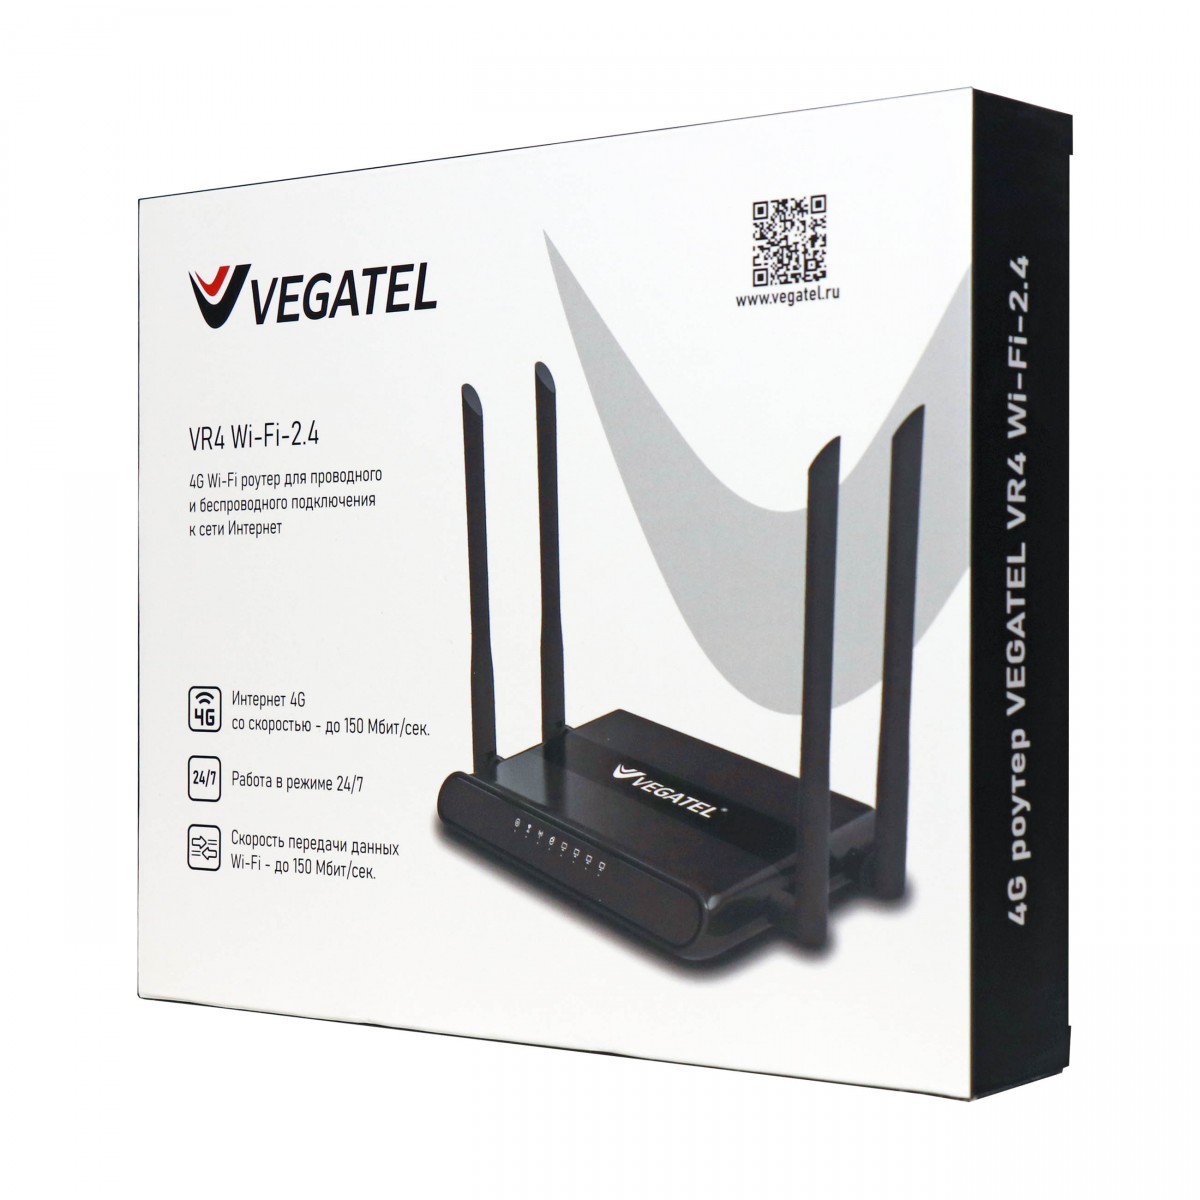 Детальное изображение товара "4G роутер VEGATEL VR4 Wi-Fi-2,4" из каталога оборудования Антенна76